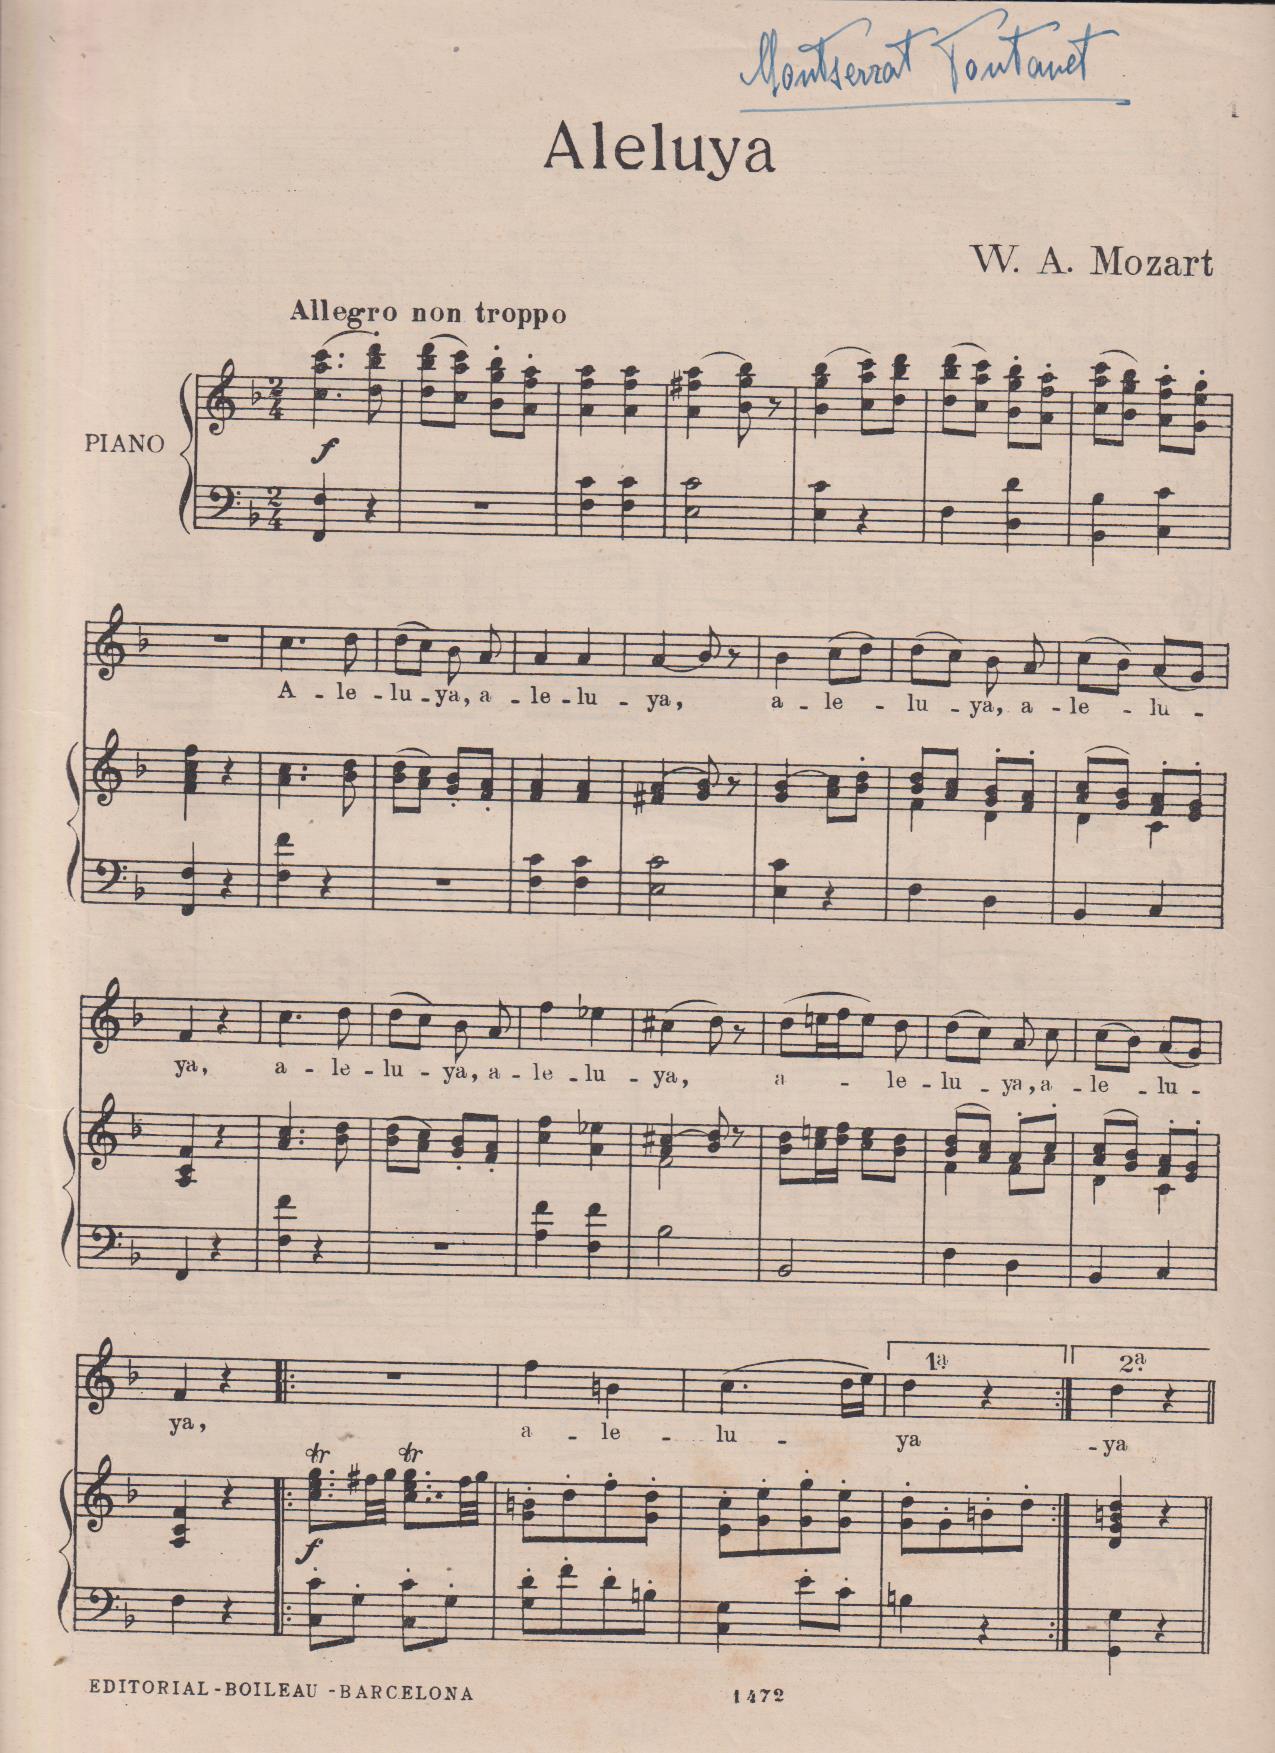 W.A. Mozart. Aleluya (32x23) 5 páginas. Firma de Montserrat Fontanet en margen de primera página